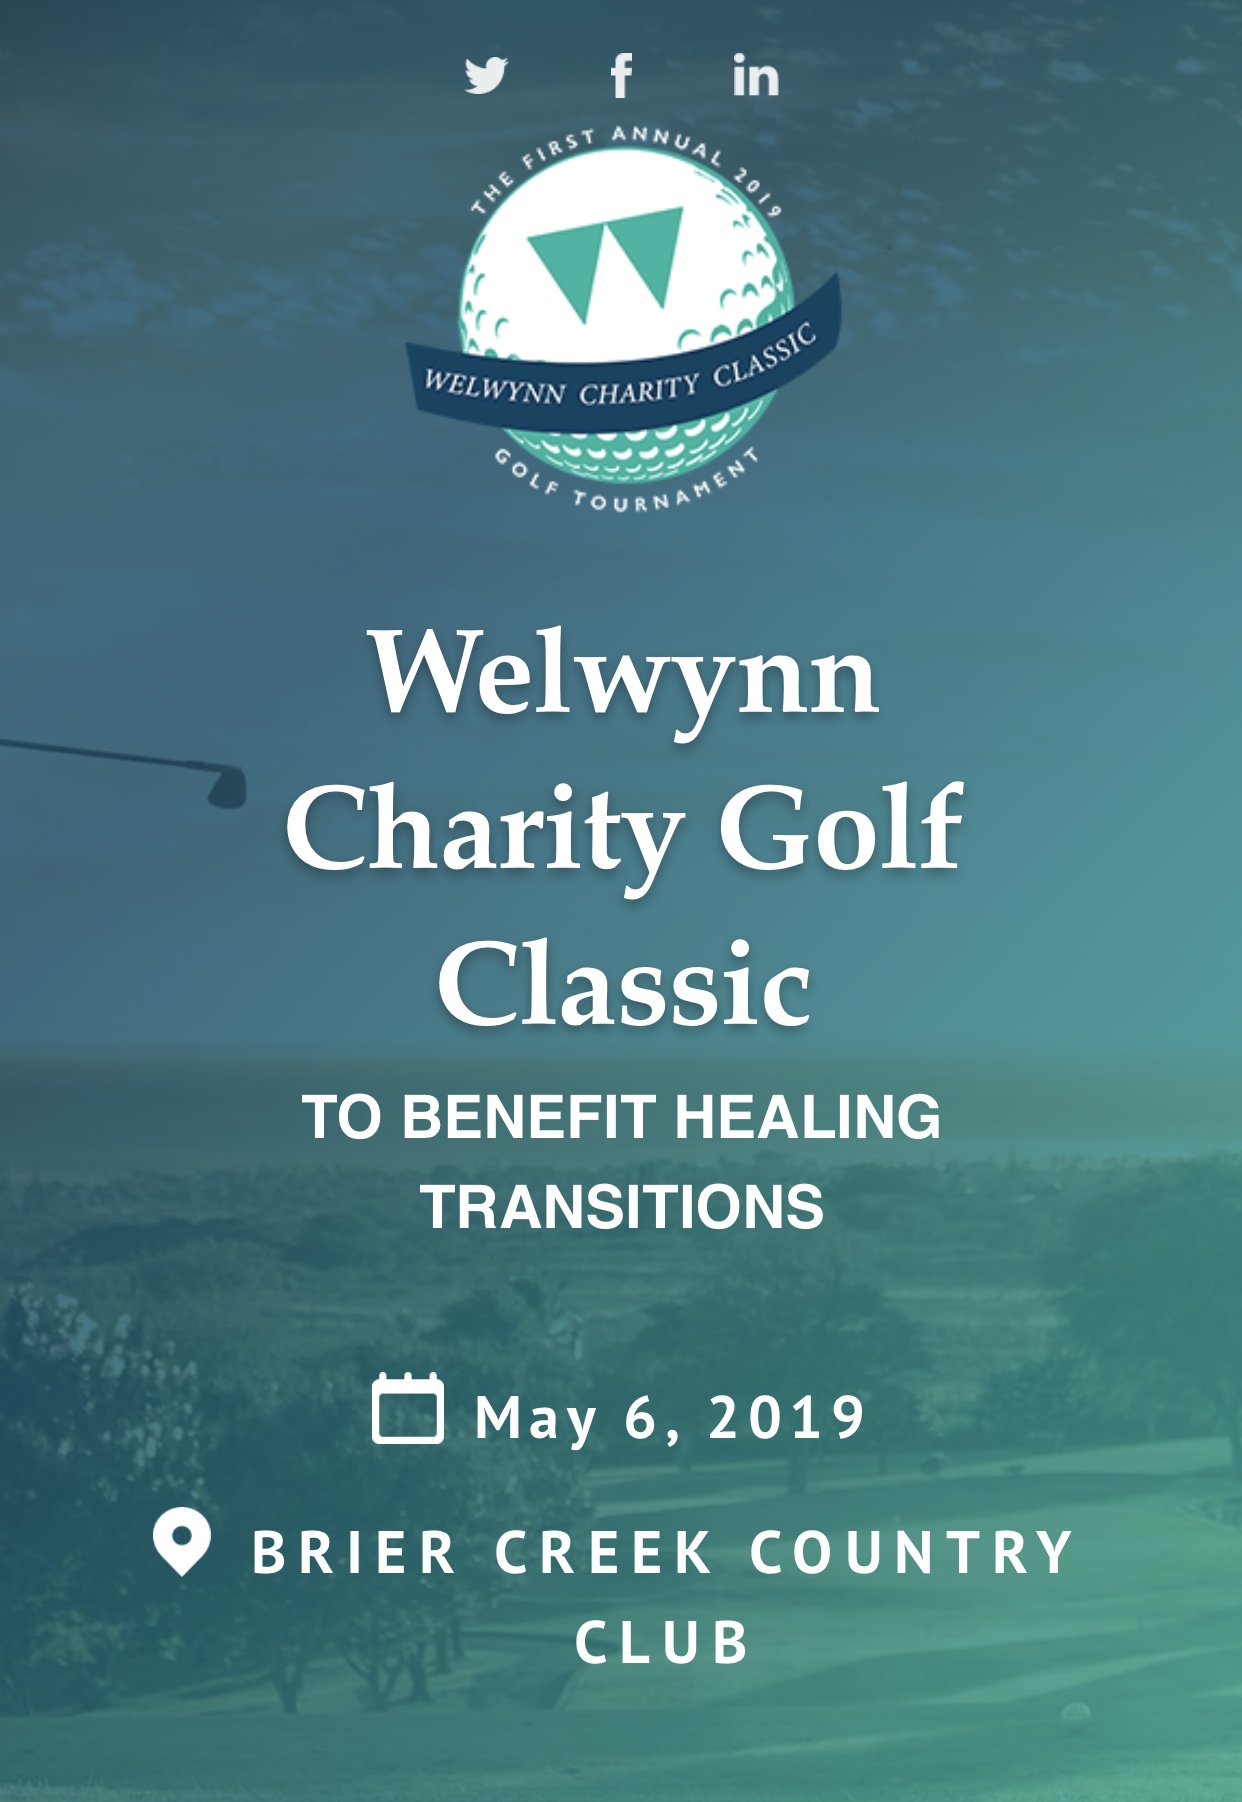 Welwynn Charity Golf Classic